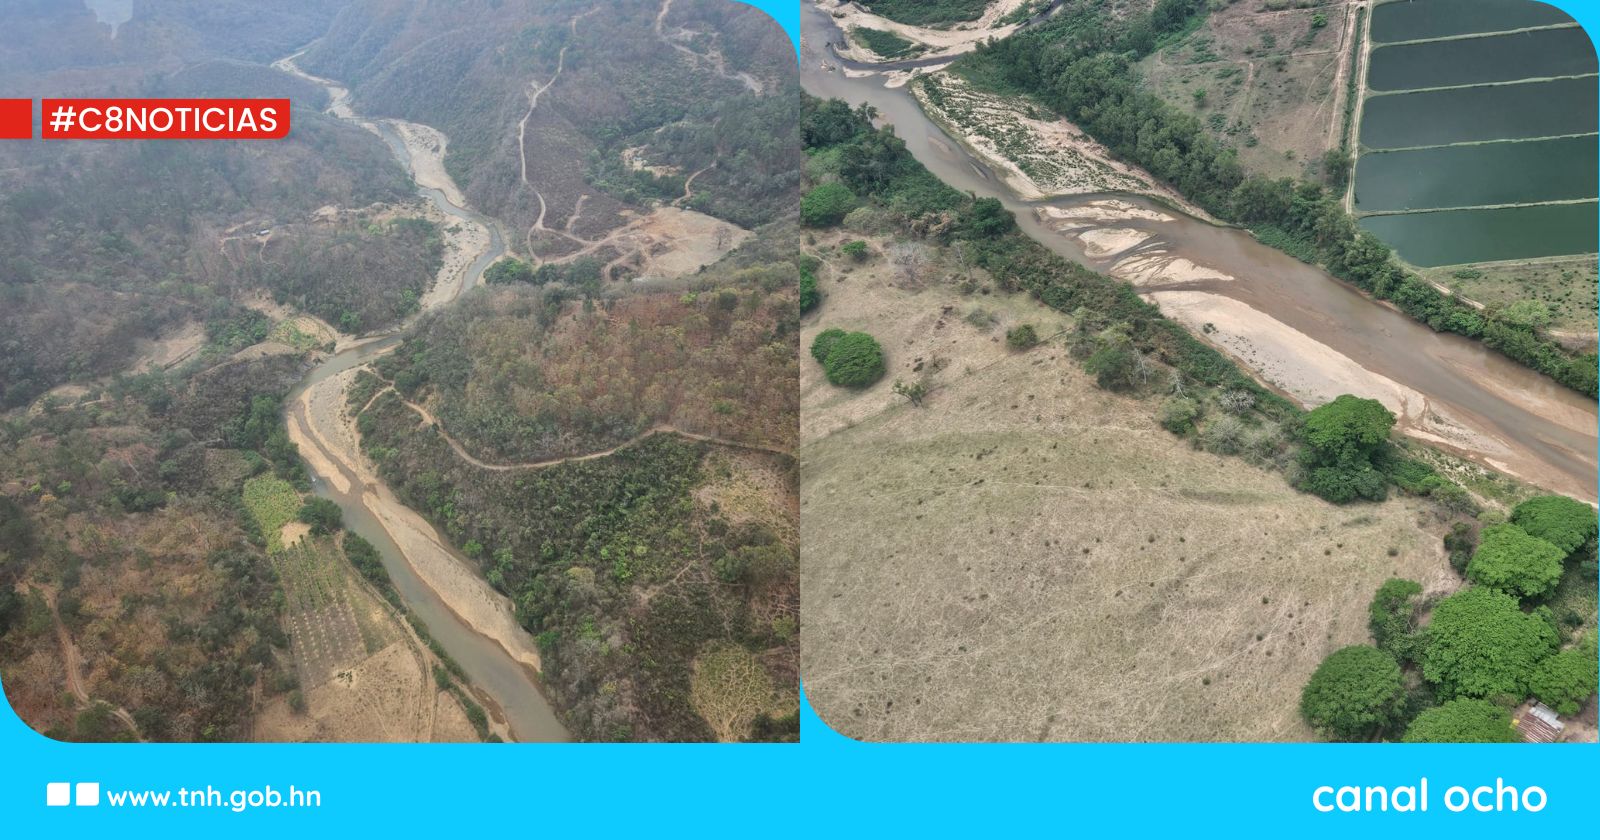 Monitorean y resguardan río Guayape por extracción ilegal de recursos naturales